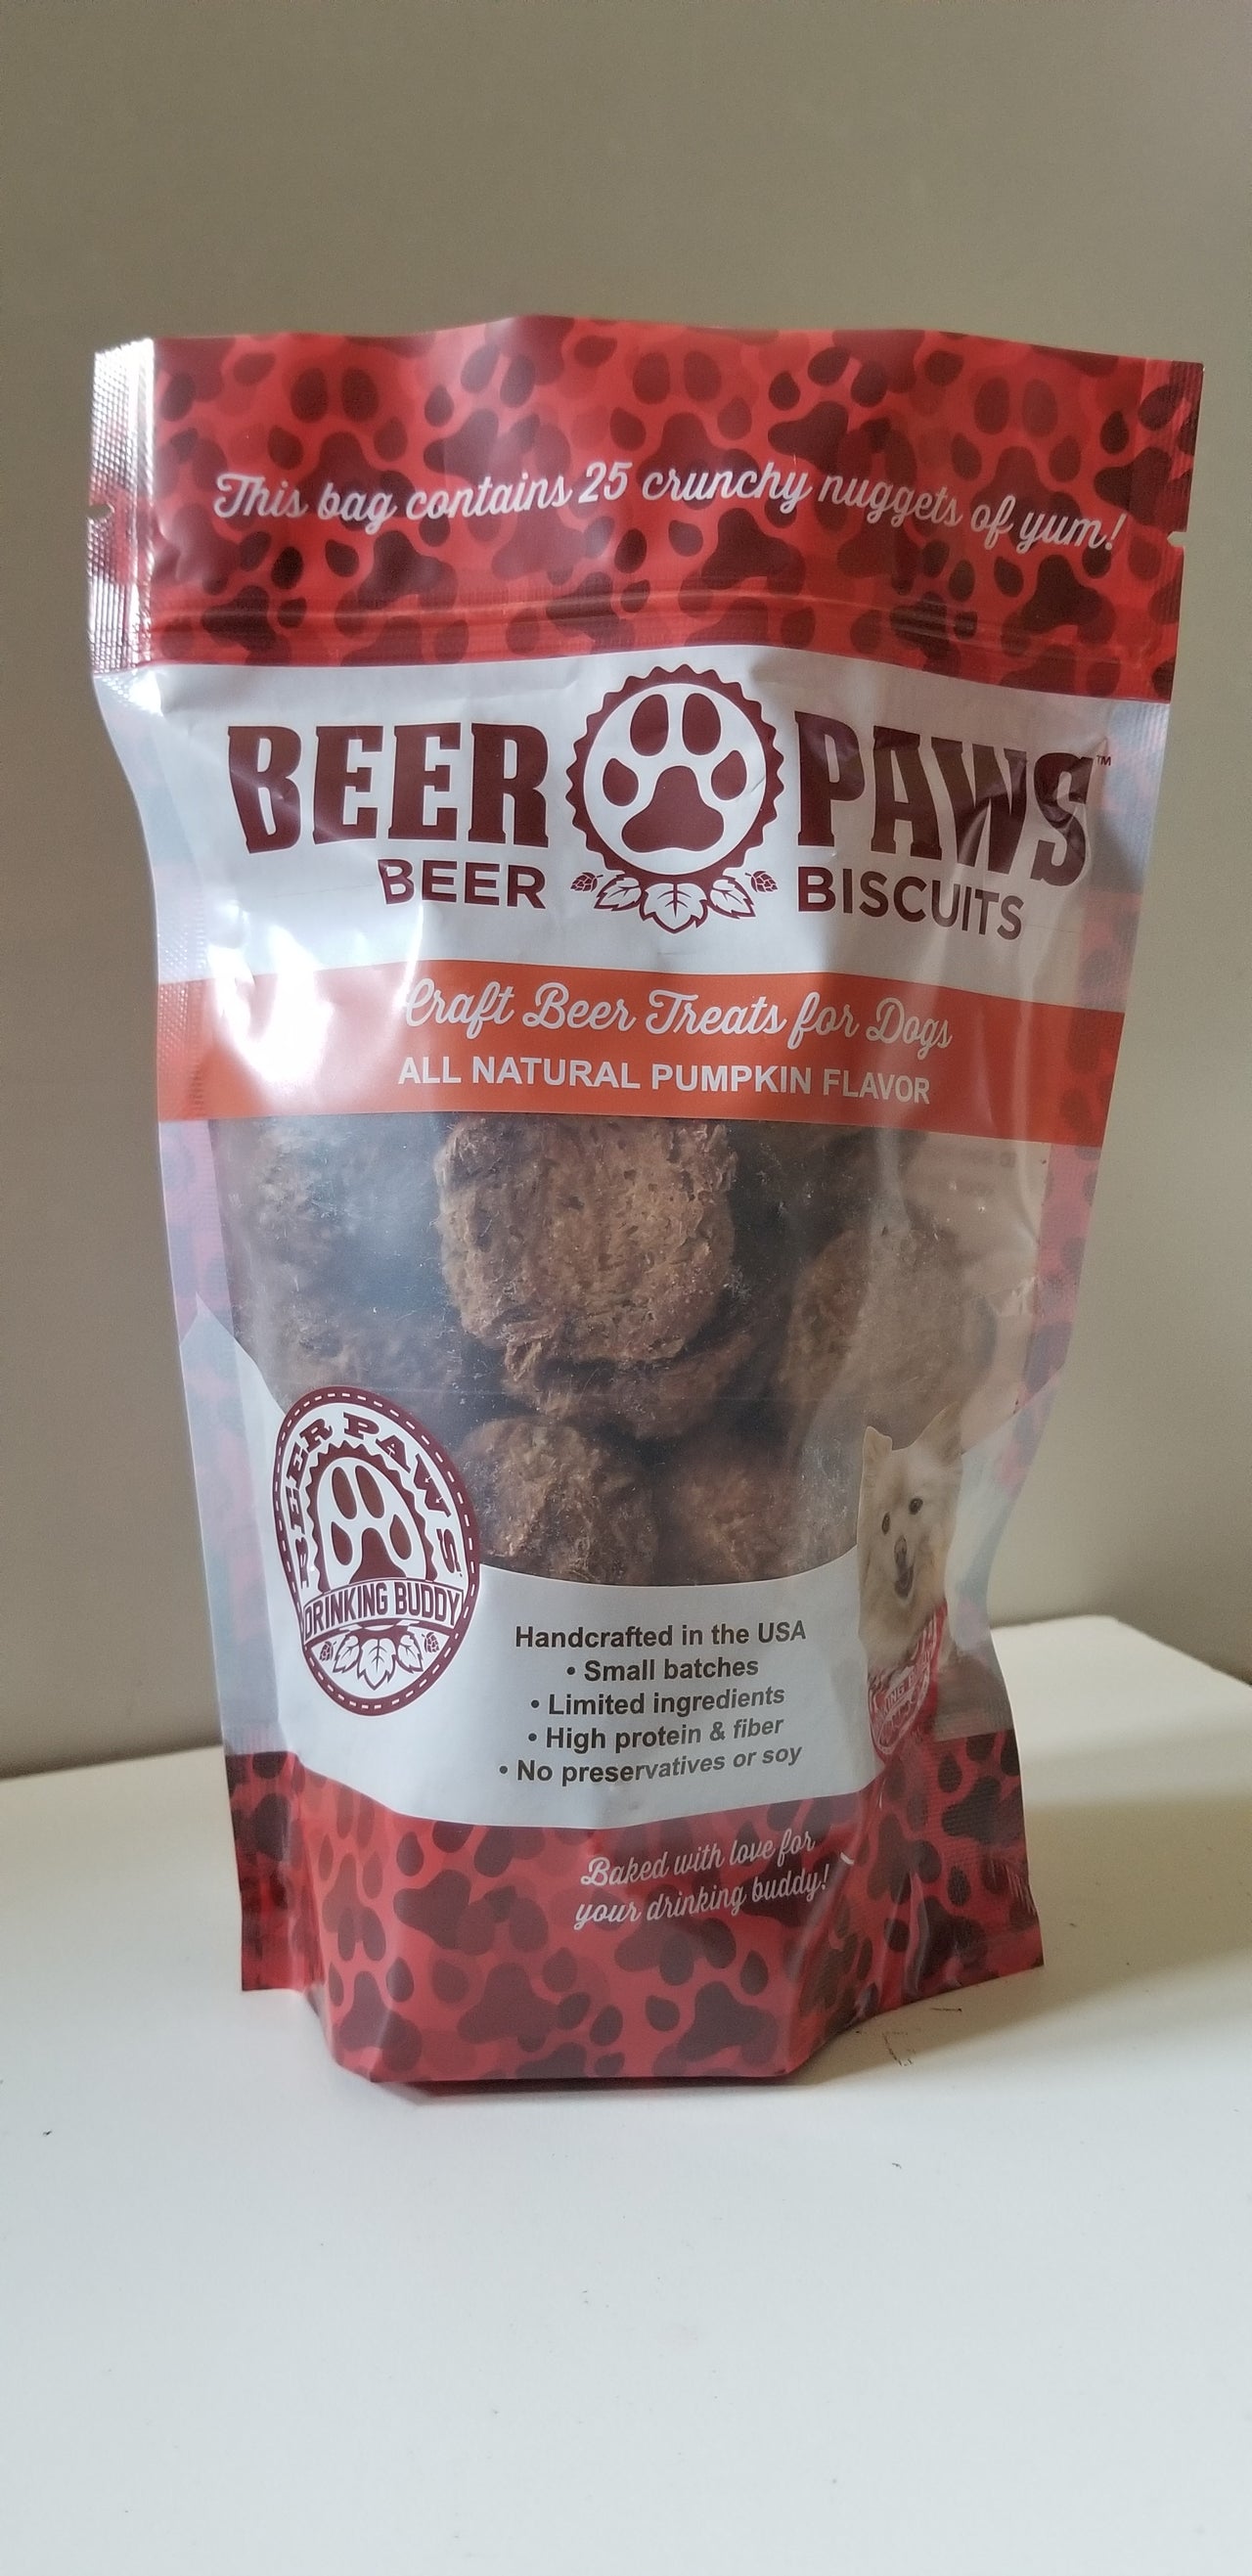 Original Beer Paws Pumpkin Spice Beer Biscuits Craft Beer Treats for Dogs